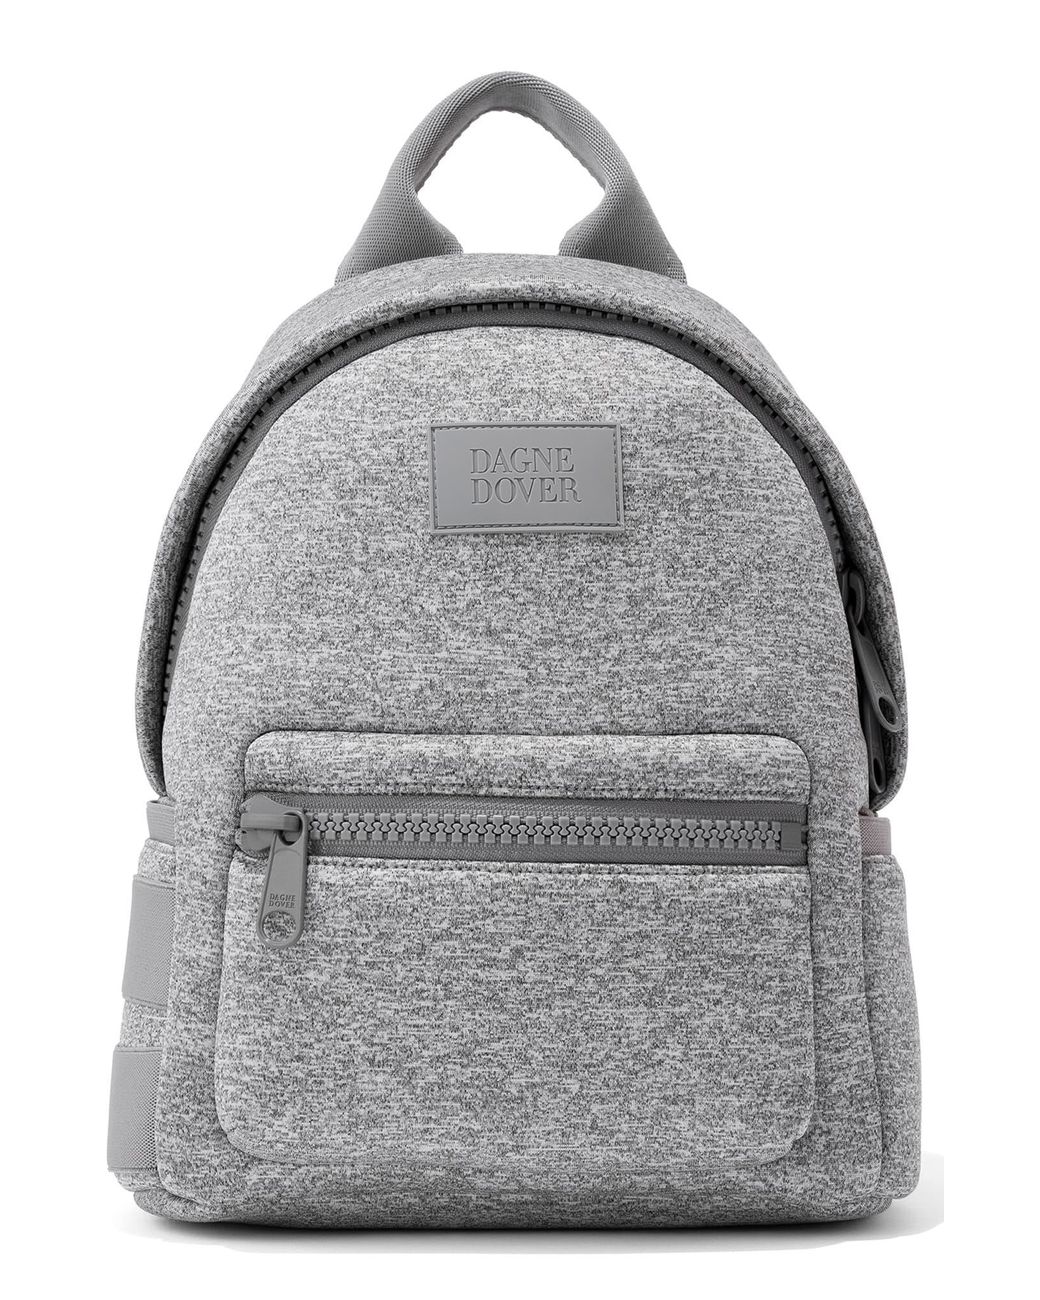 Dagne Dover Small Dakota Neoprene Backpack in Gray - Save 31% - Lyst